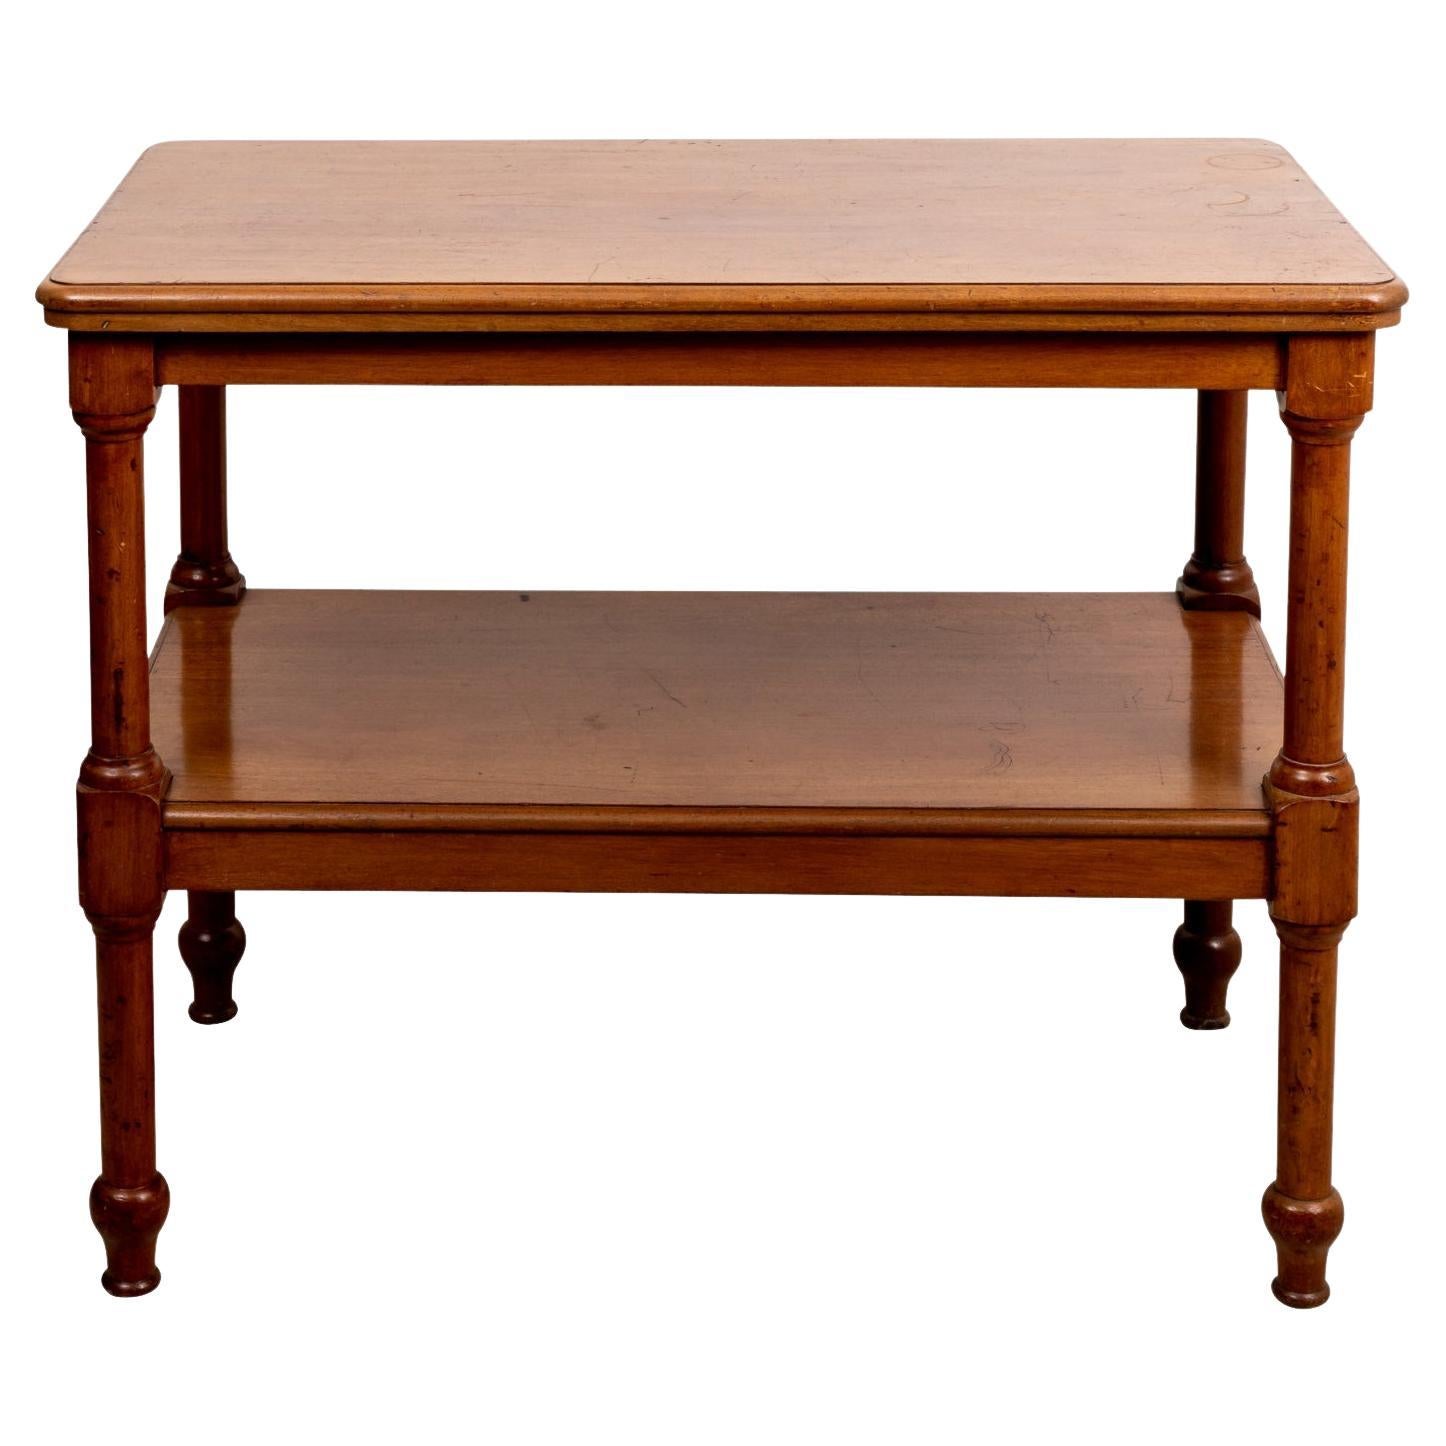 19th Century English Mahogany Console Table